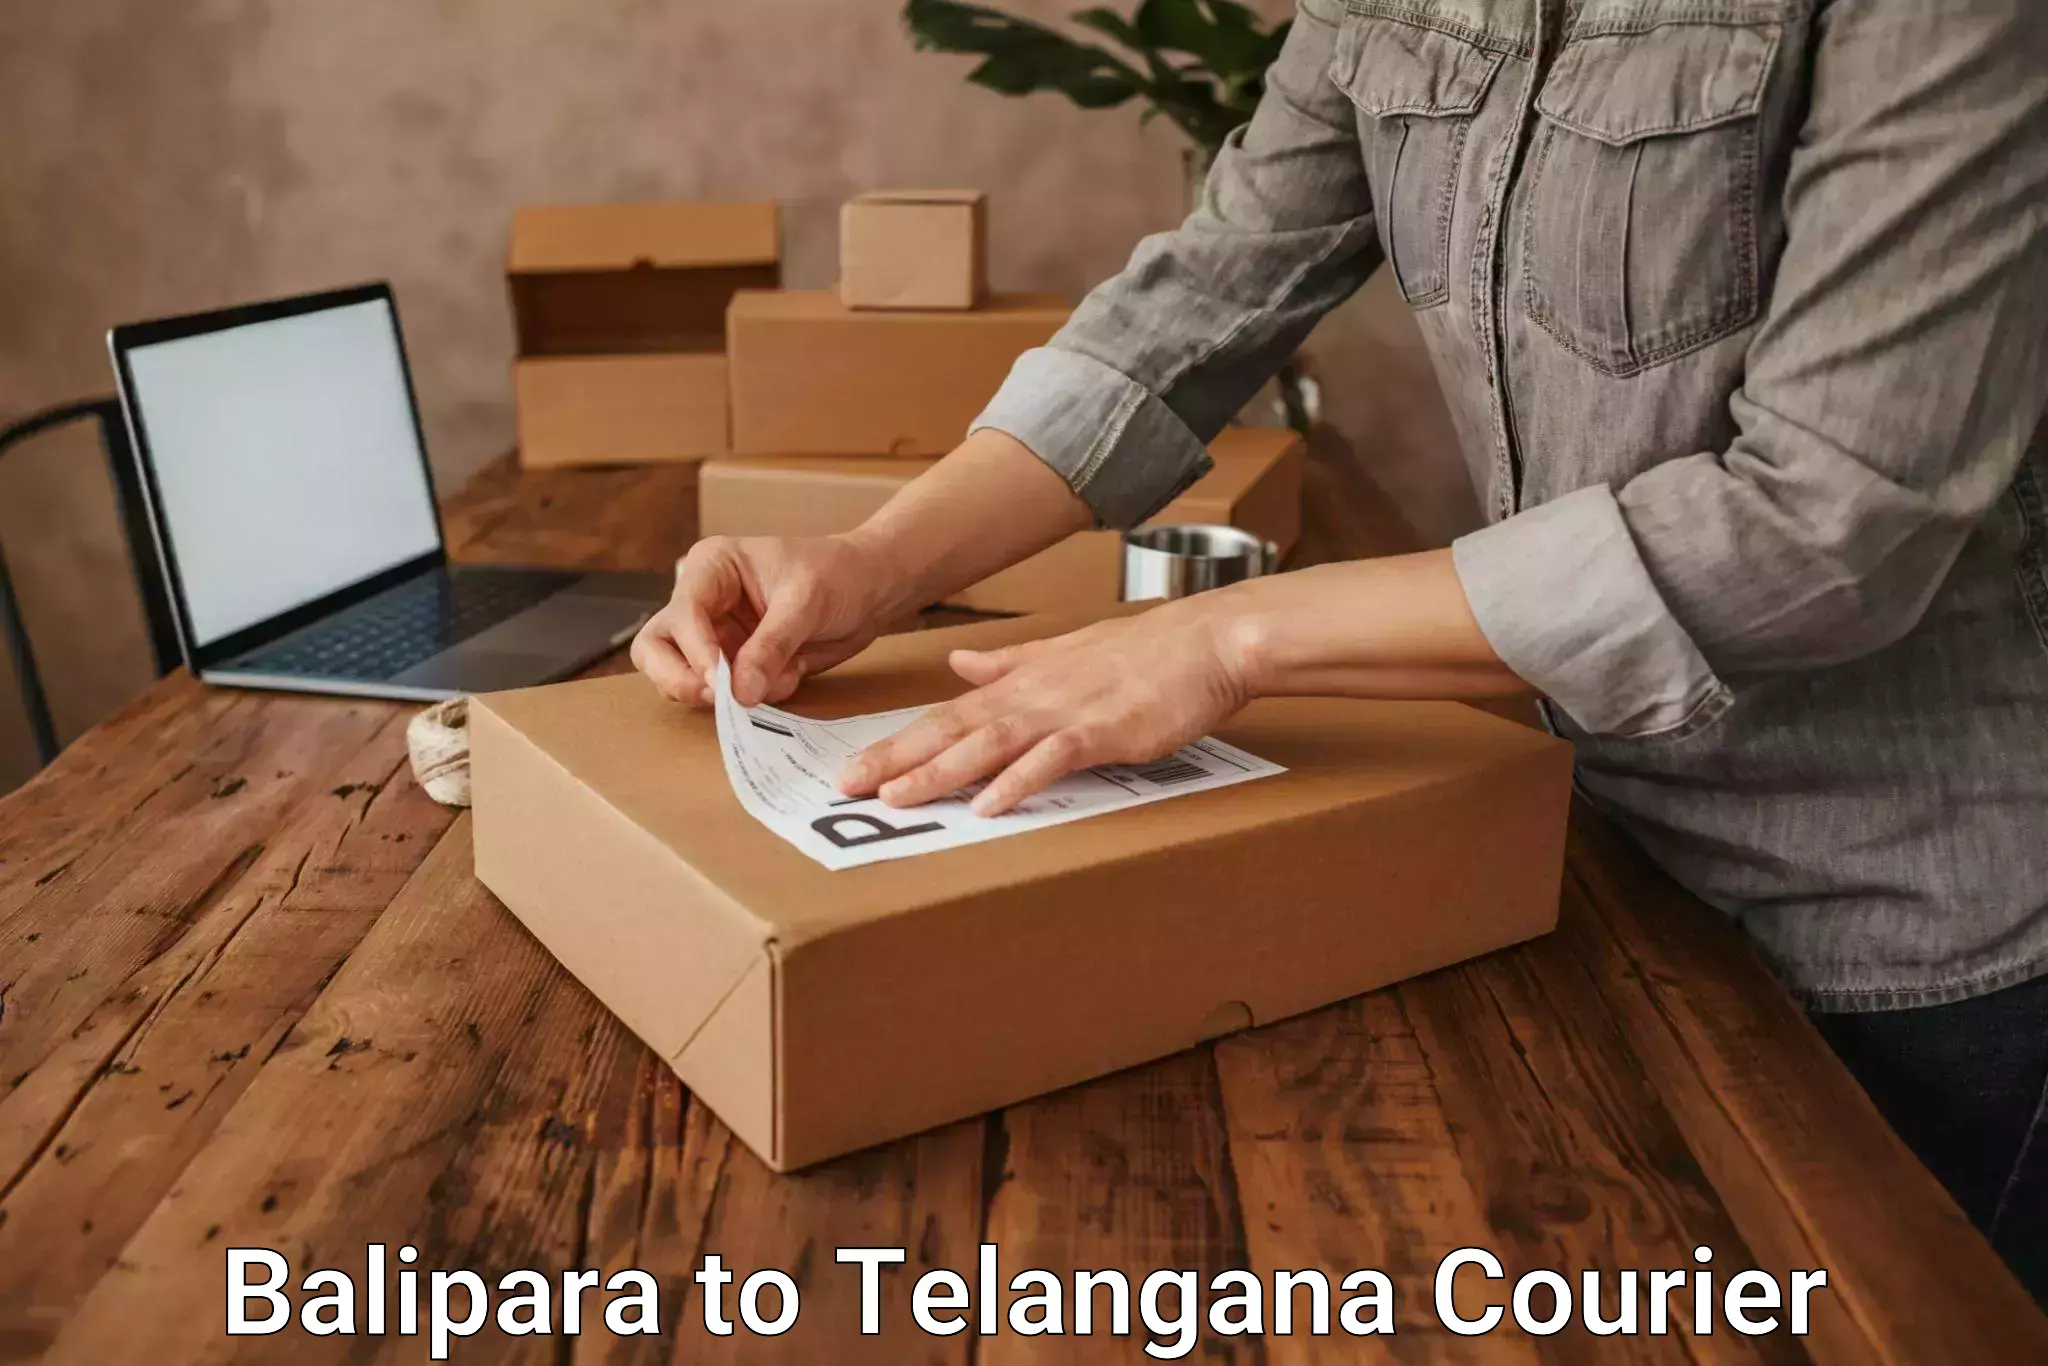 Nationwide delivery network Balipara to Balanagar